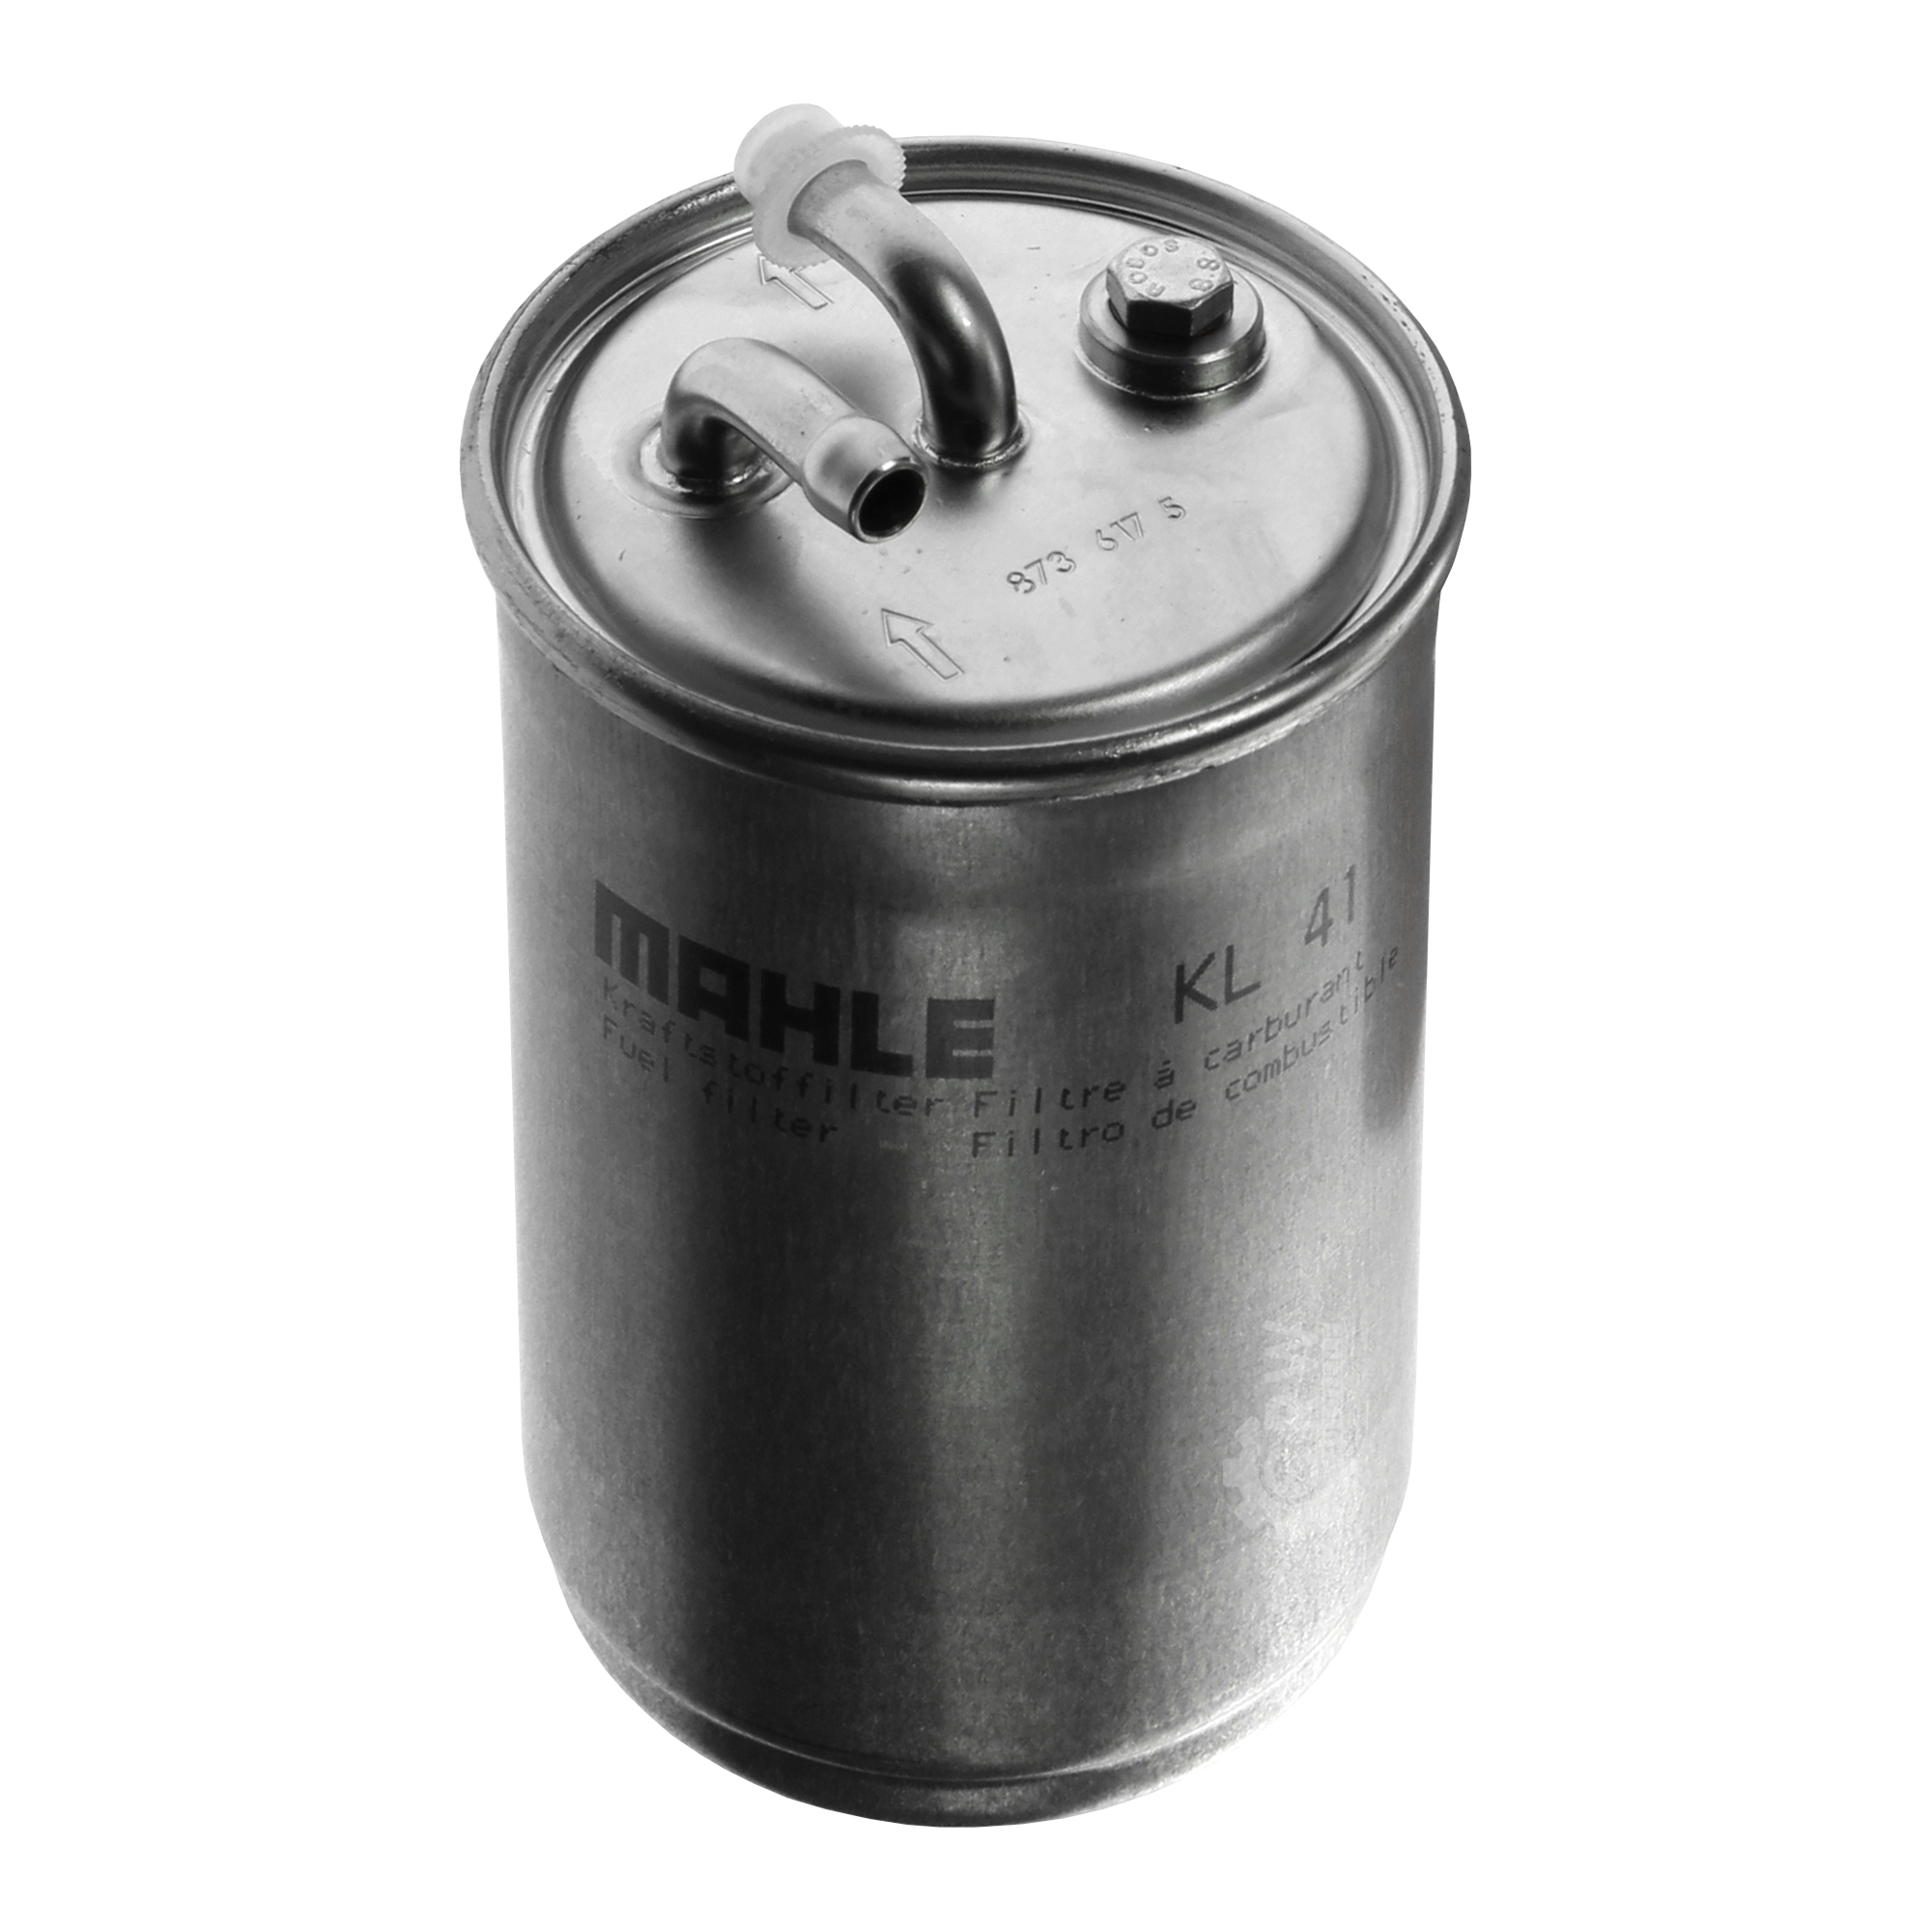 MAHLE Kraftstofffilter KL 41 Fuel Filter